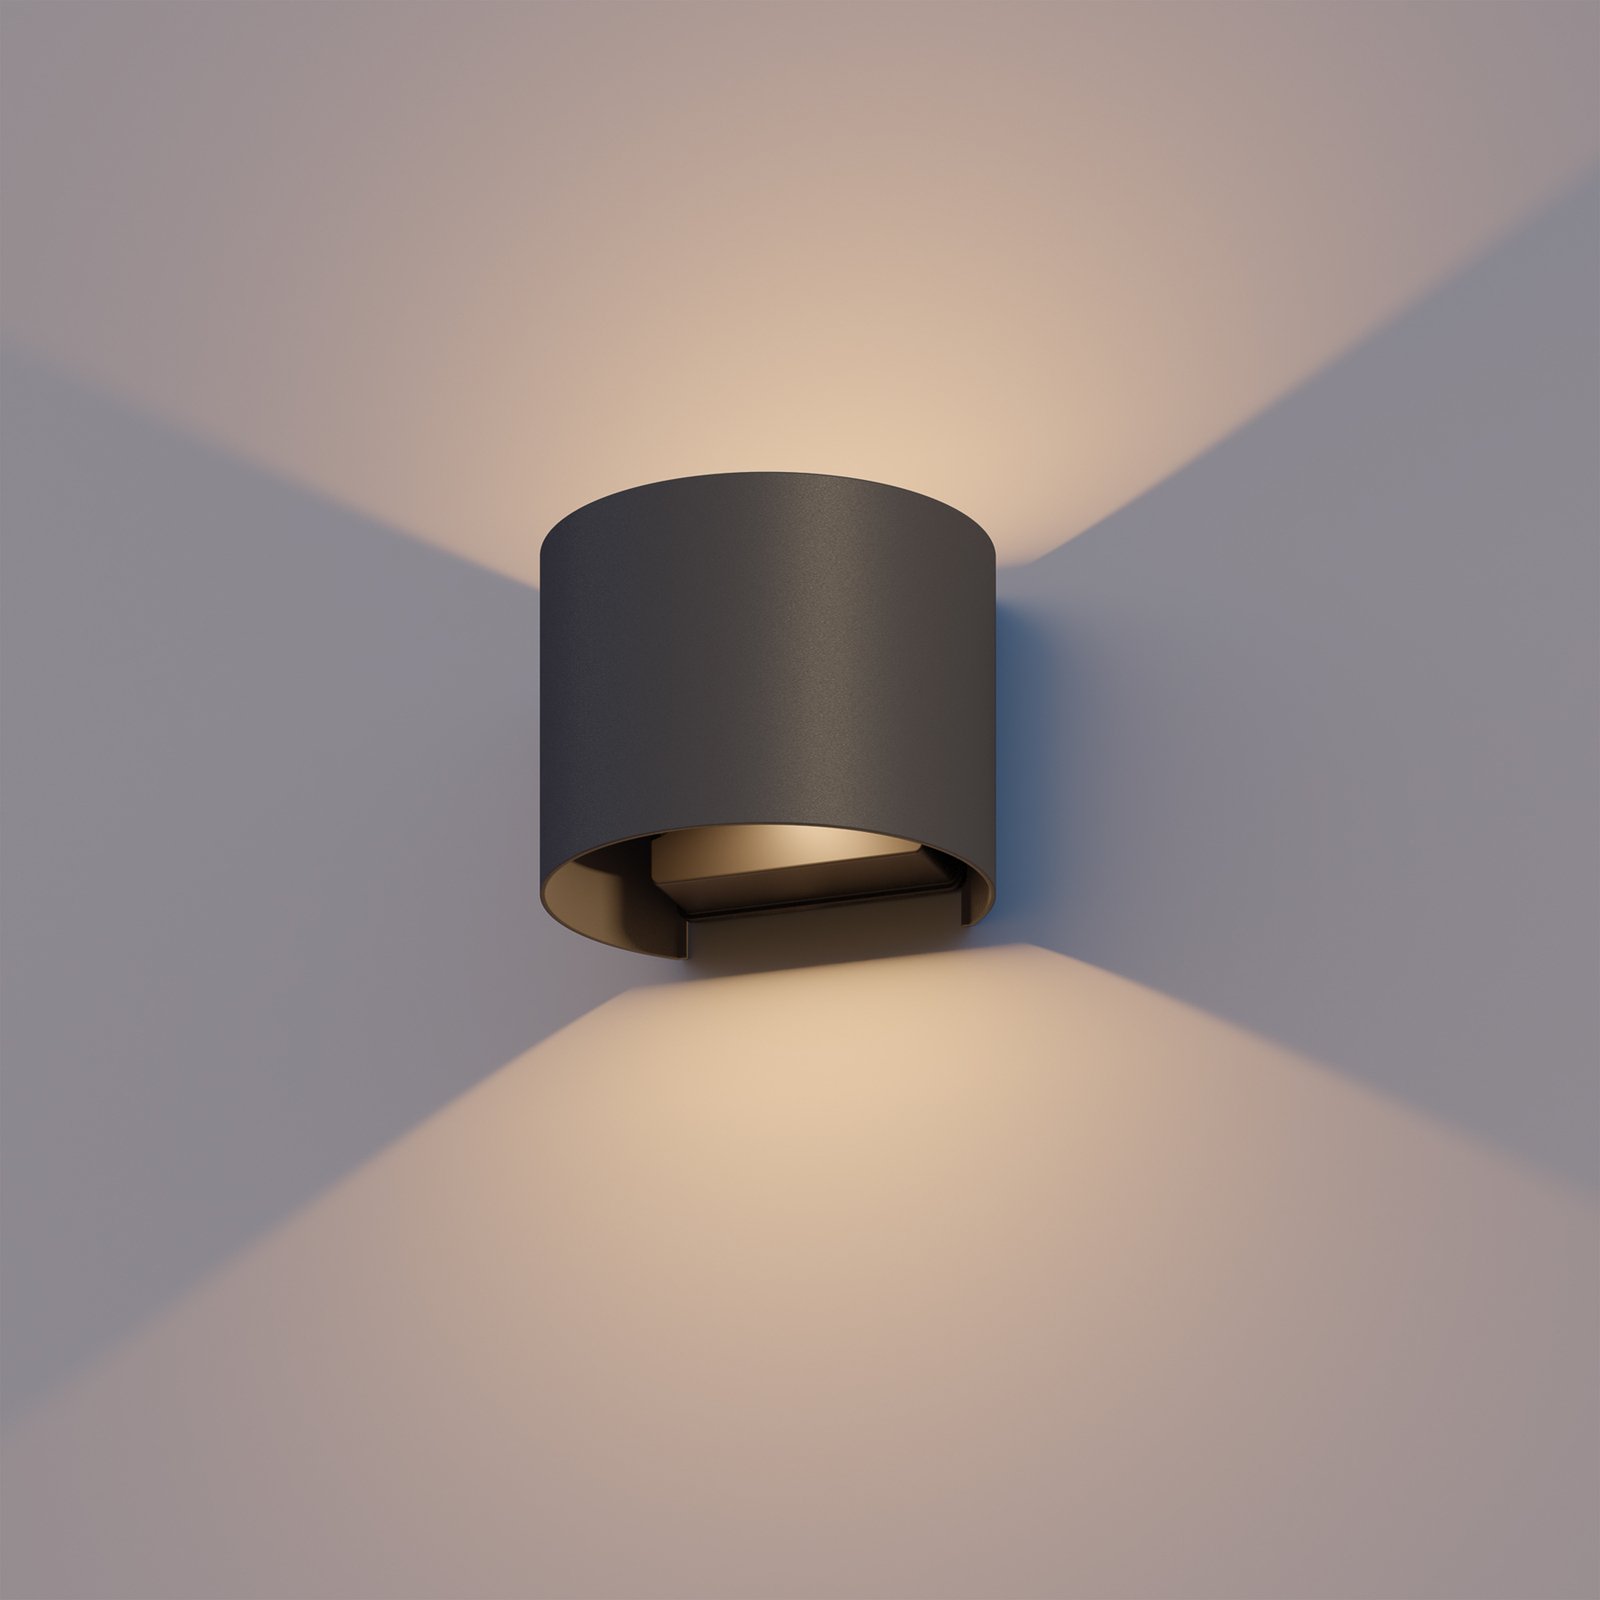 Kinkiet zewnętrzny LED Calex Oval, Up/Down, wysokość 10 cm, czarny